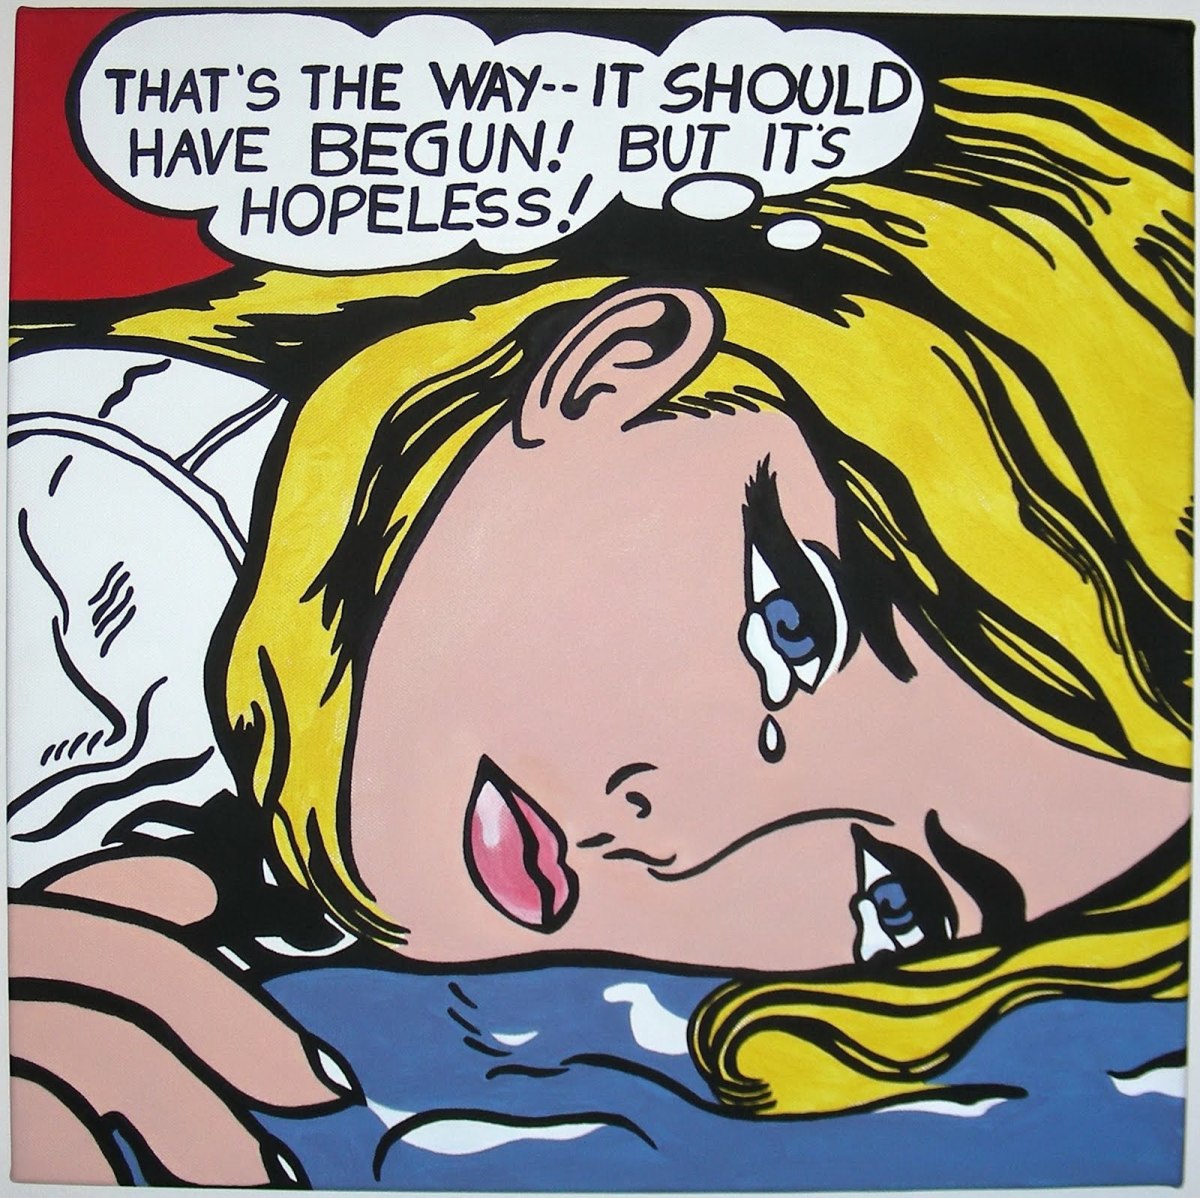 Roy Lichtenstein's "Hopeless"—from comic to fine art, Lichtenstein transforms the image.